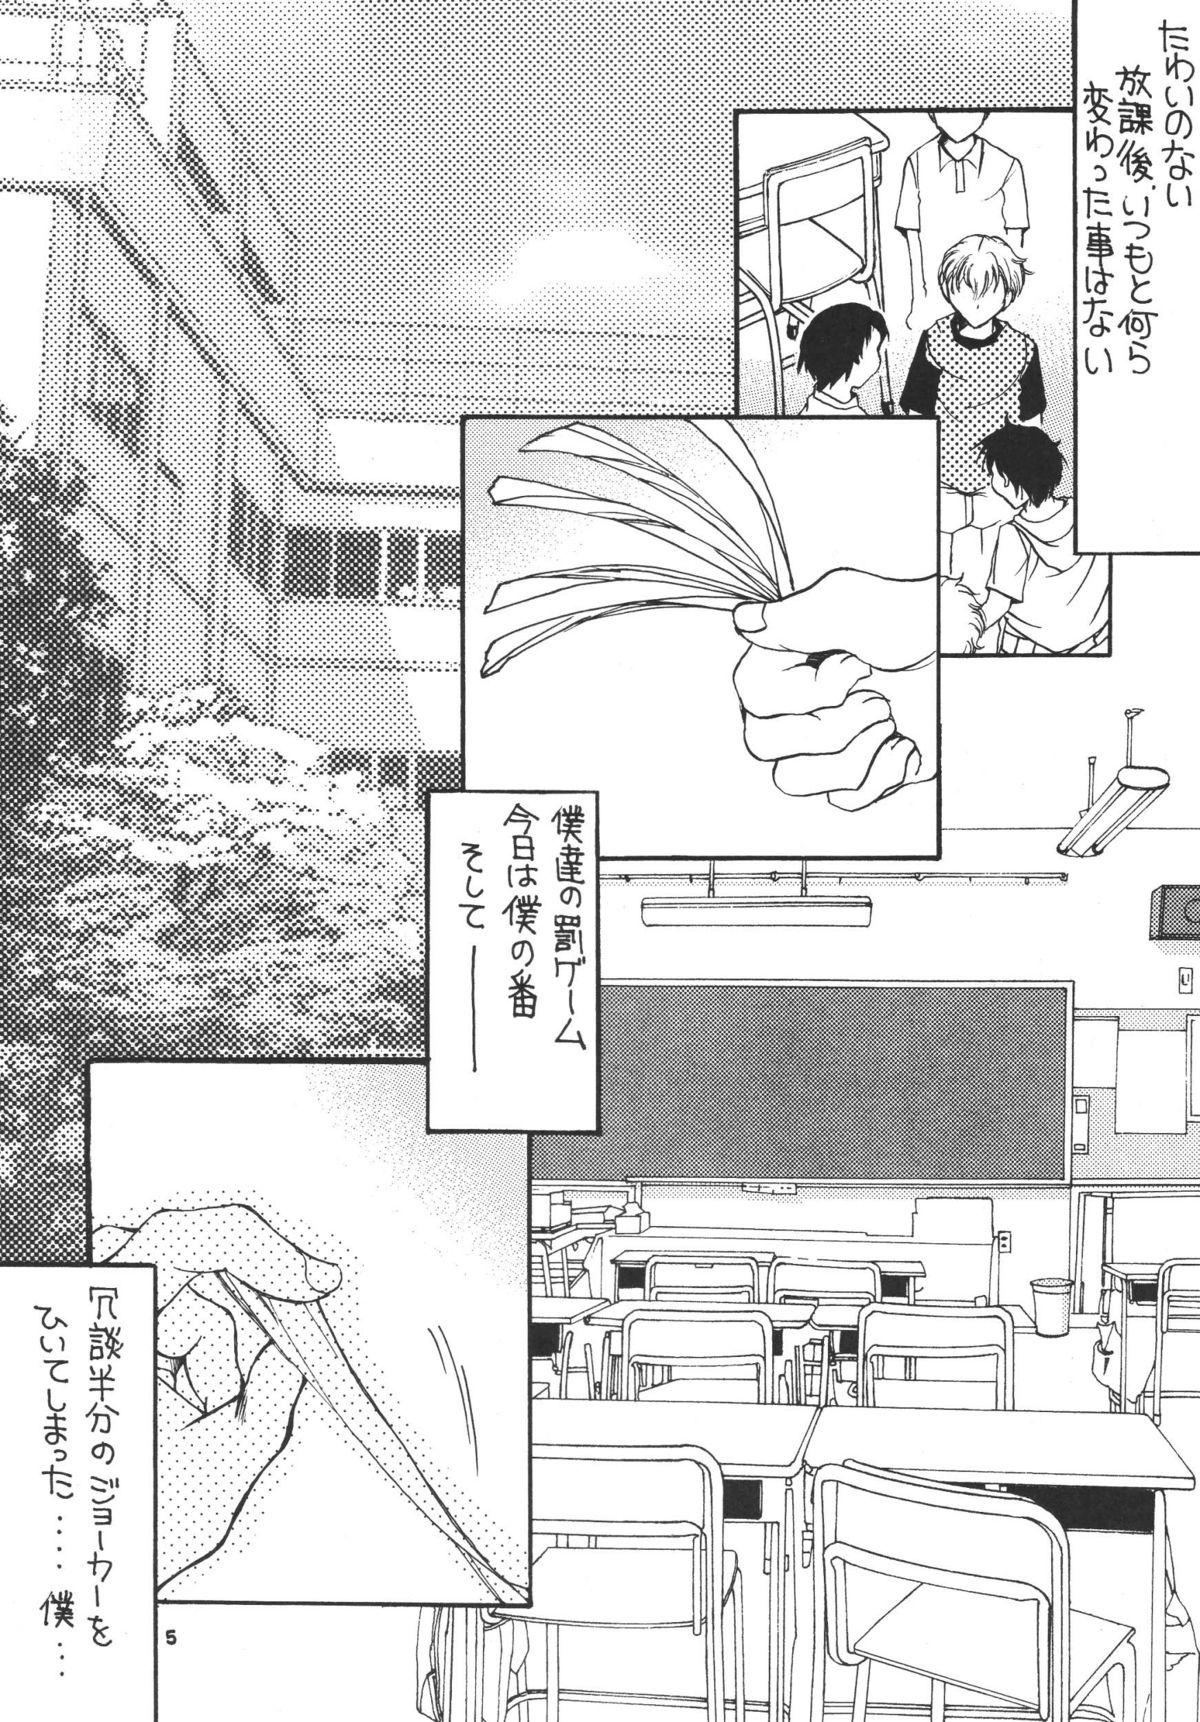 Girls Tsukutsuku Haha 3 Style - Page 5